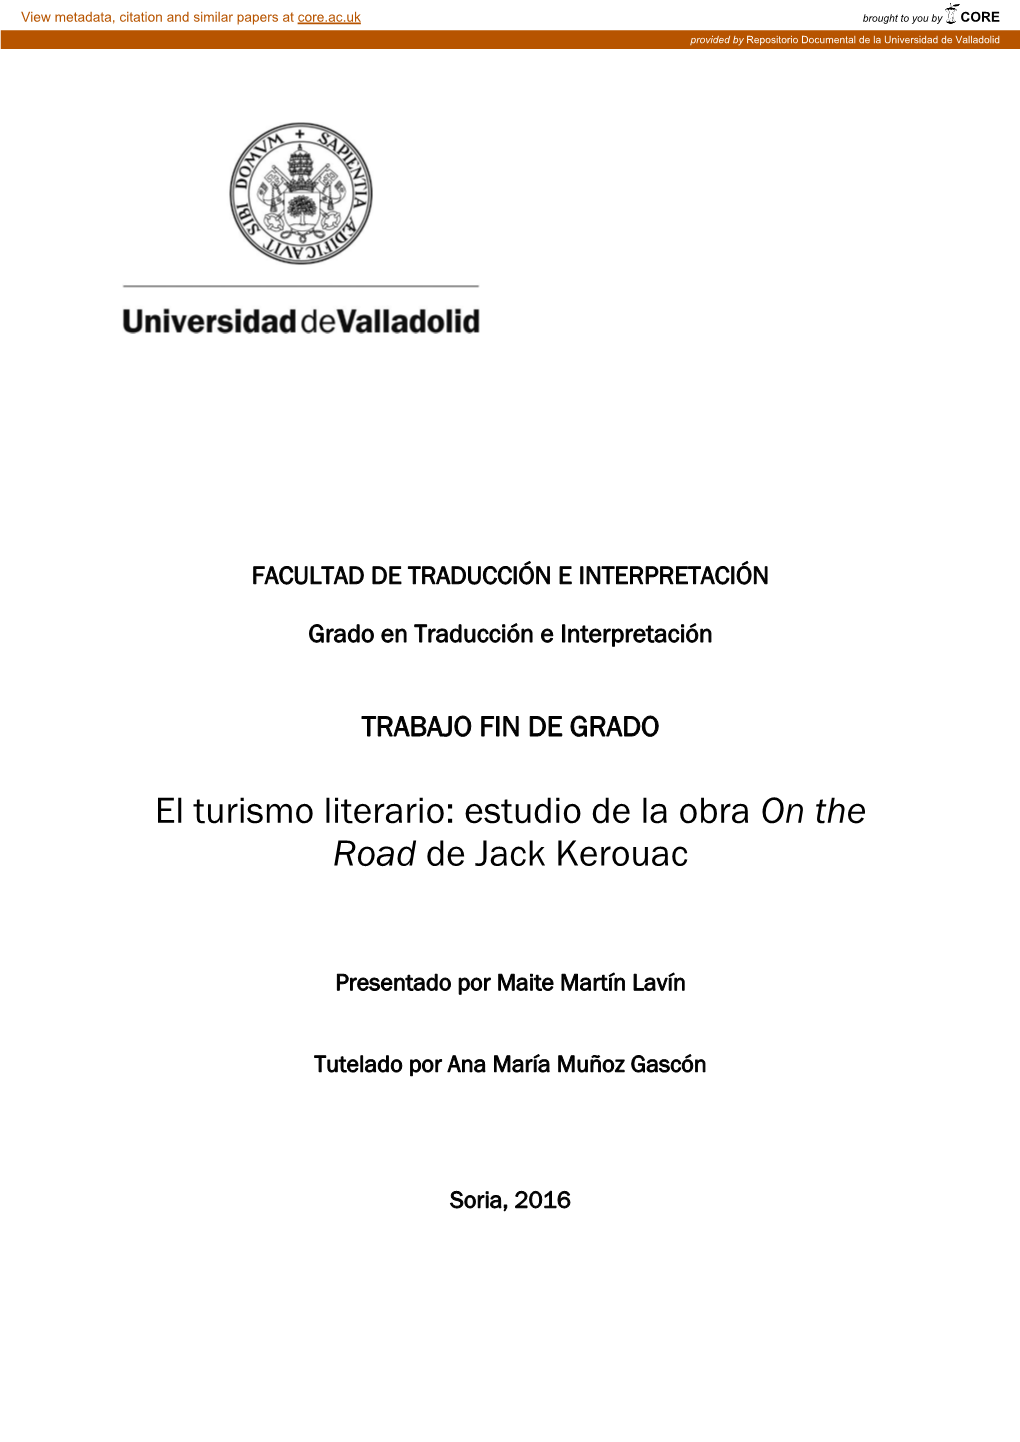 Estudio De La Obra on the Road De Jack Kerouac